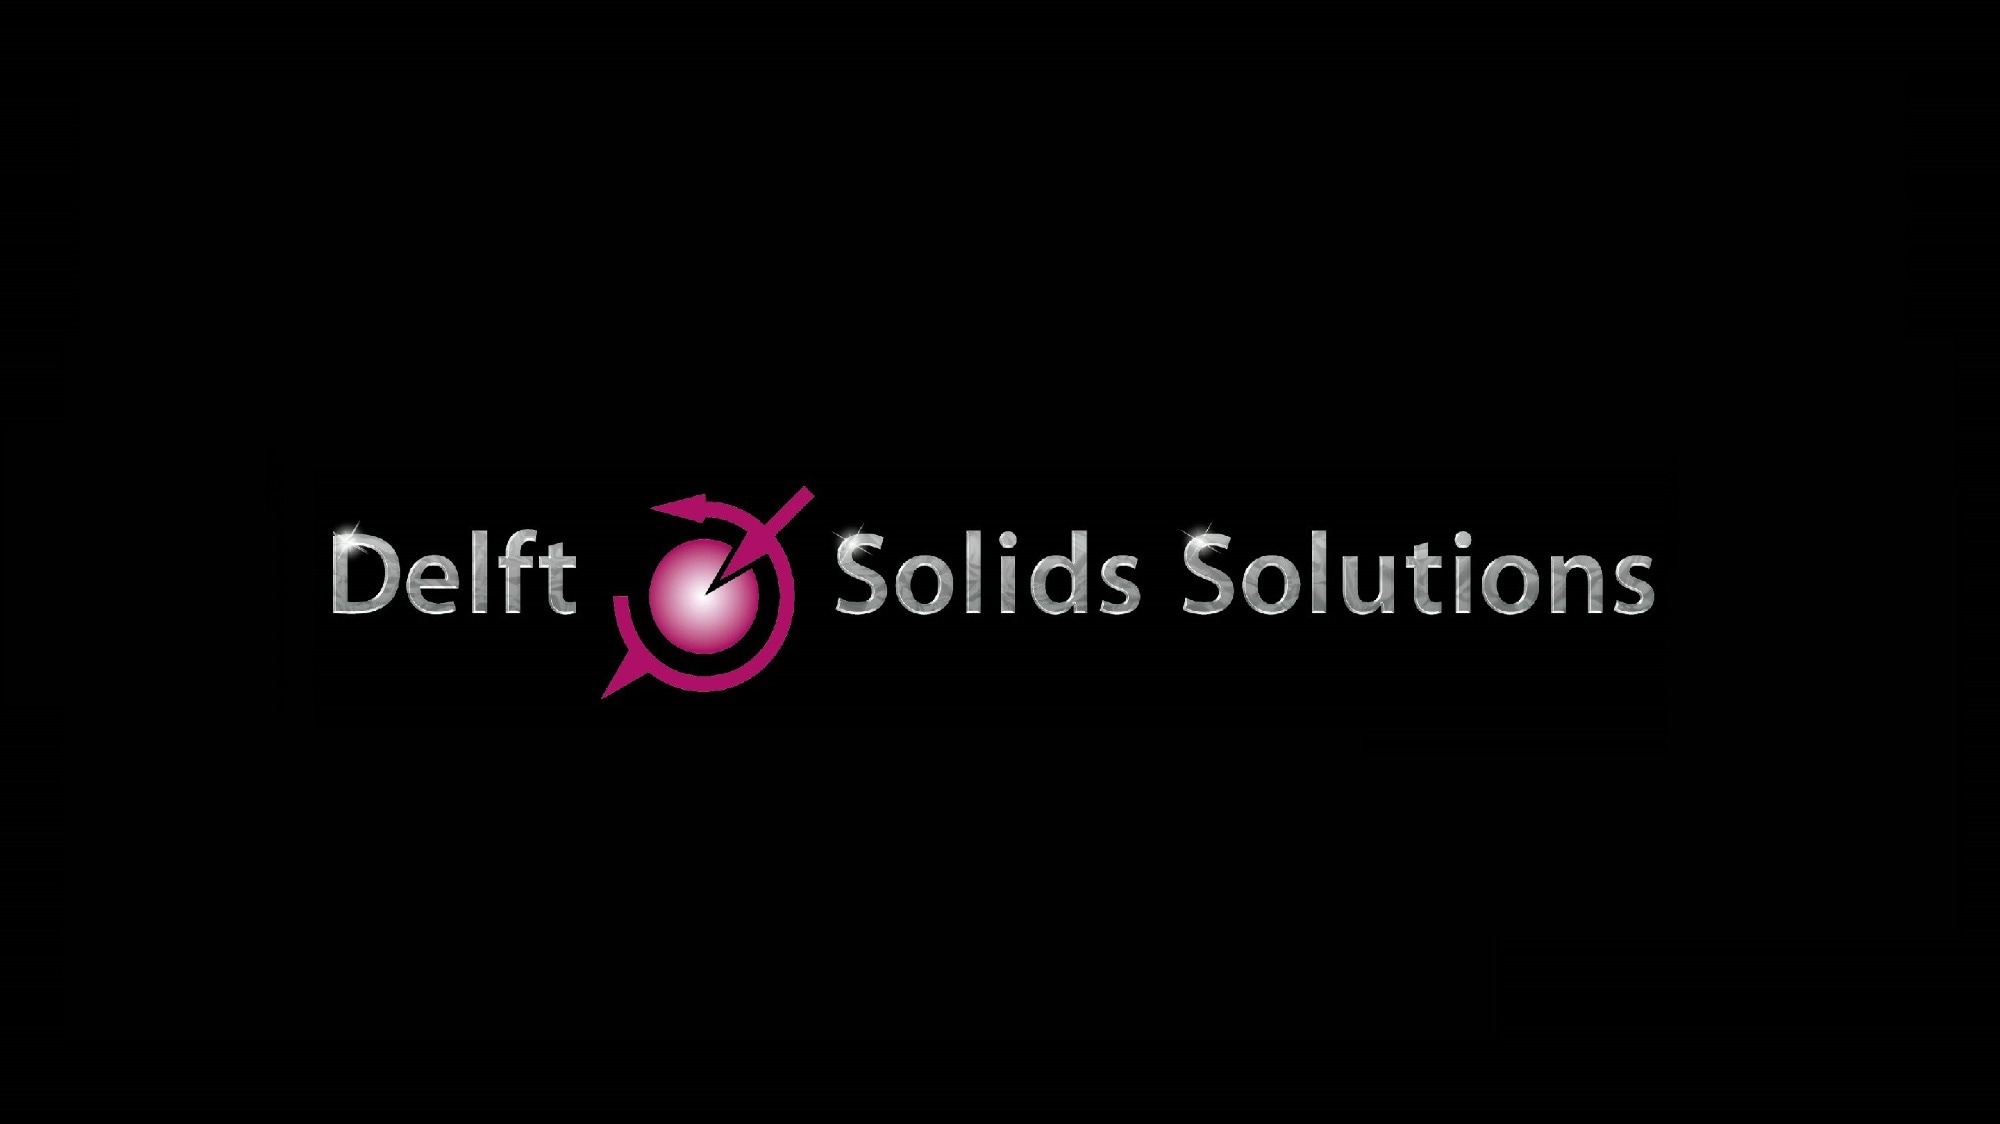 Delft Solids Solutions